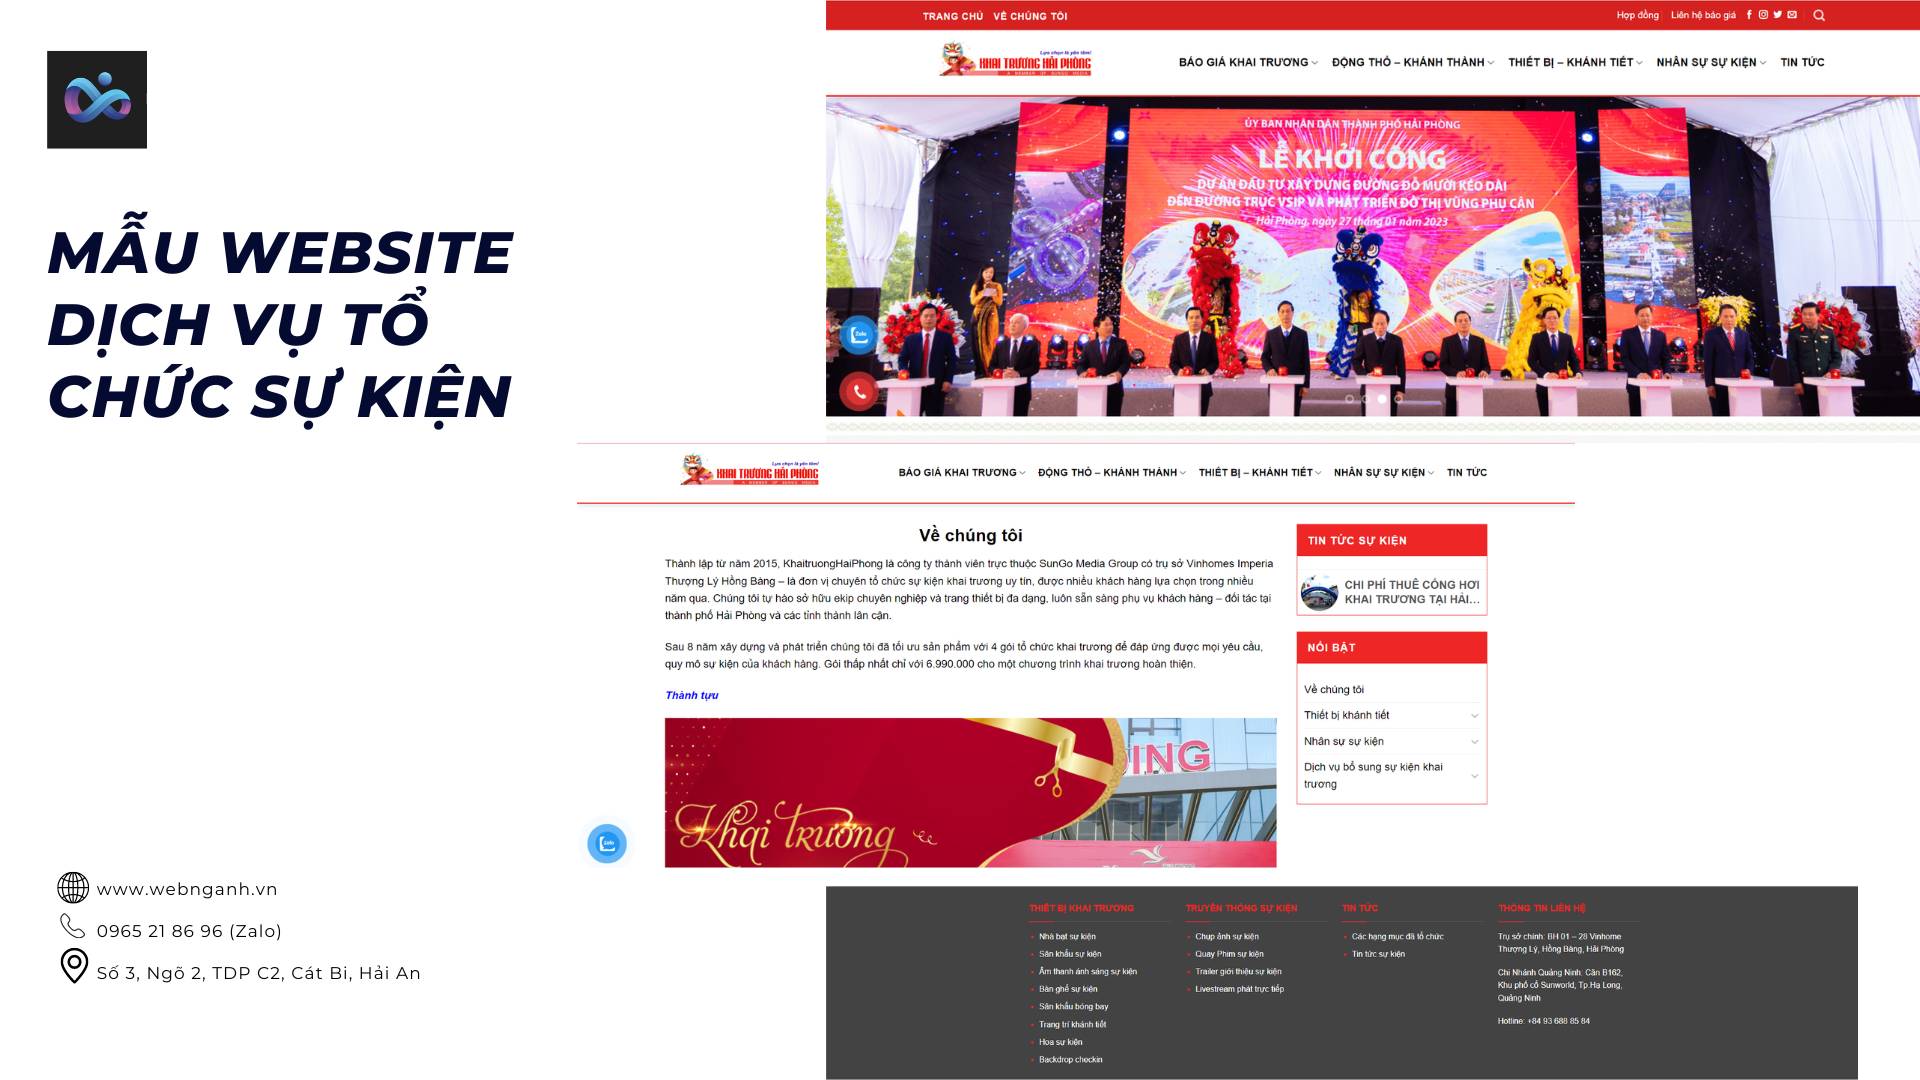 Mẫu website Giới thiệu dịch vụ tổ chức sự kiện